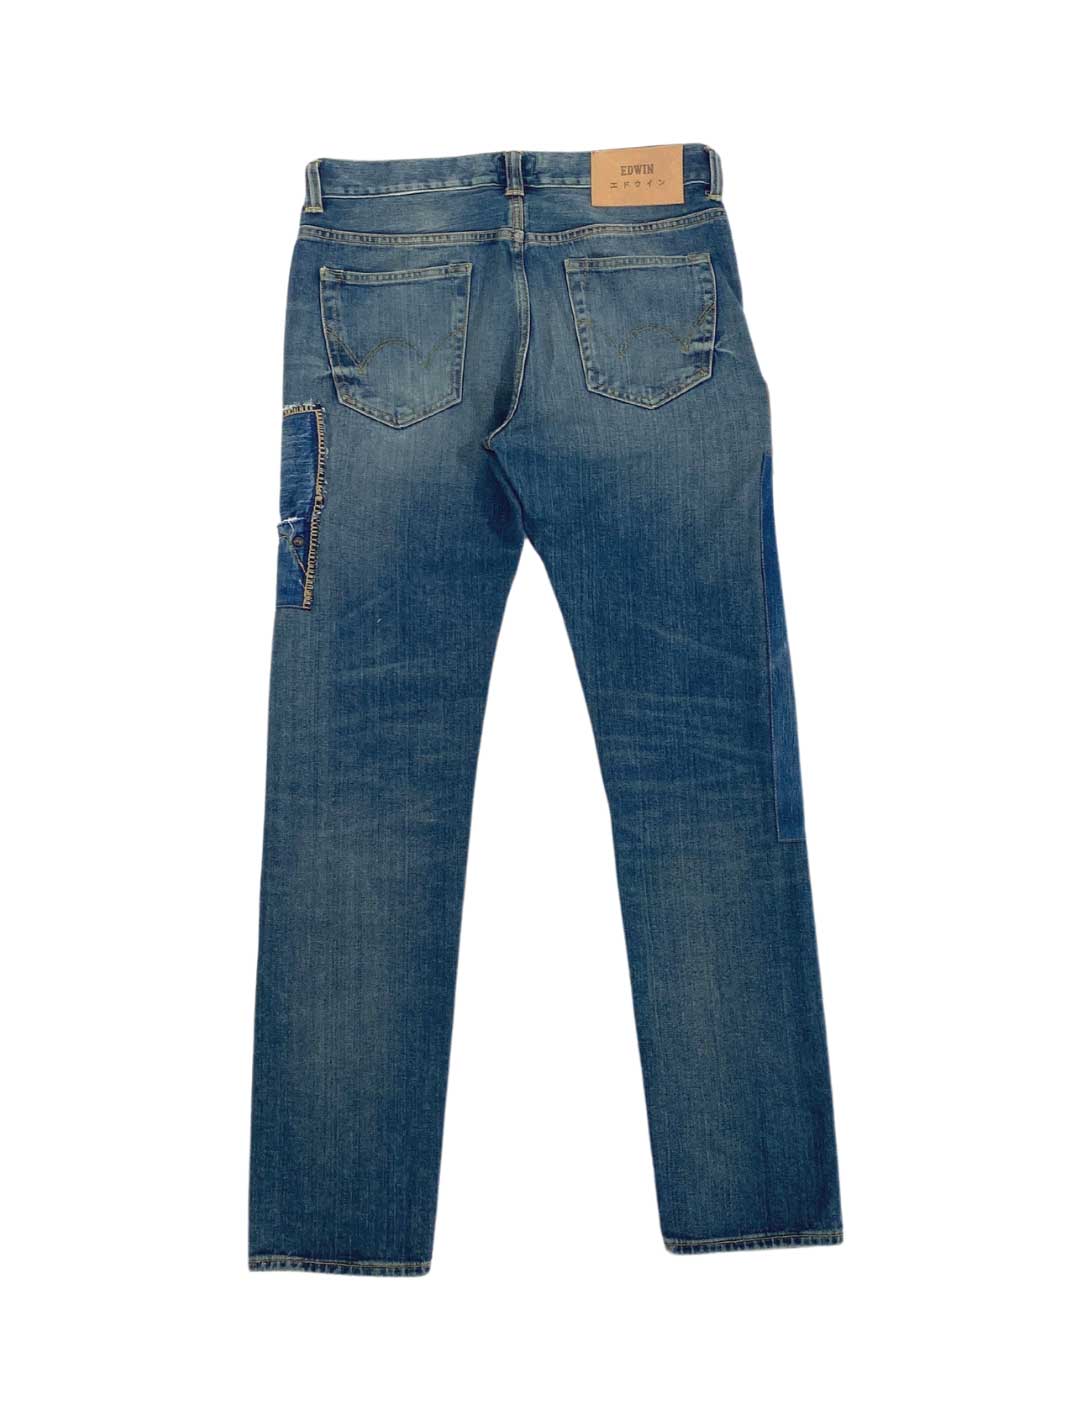 Herren Vintage upcycled Jeans in mittelblauer Waschung Größe 30/32 100% Baumwolle